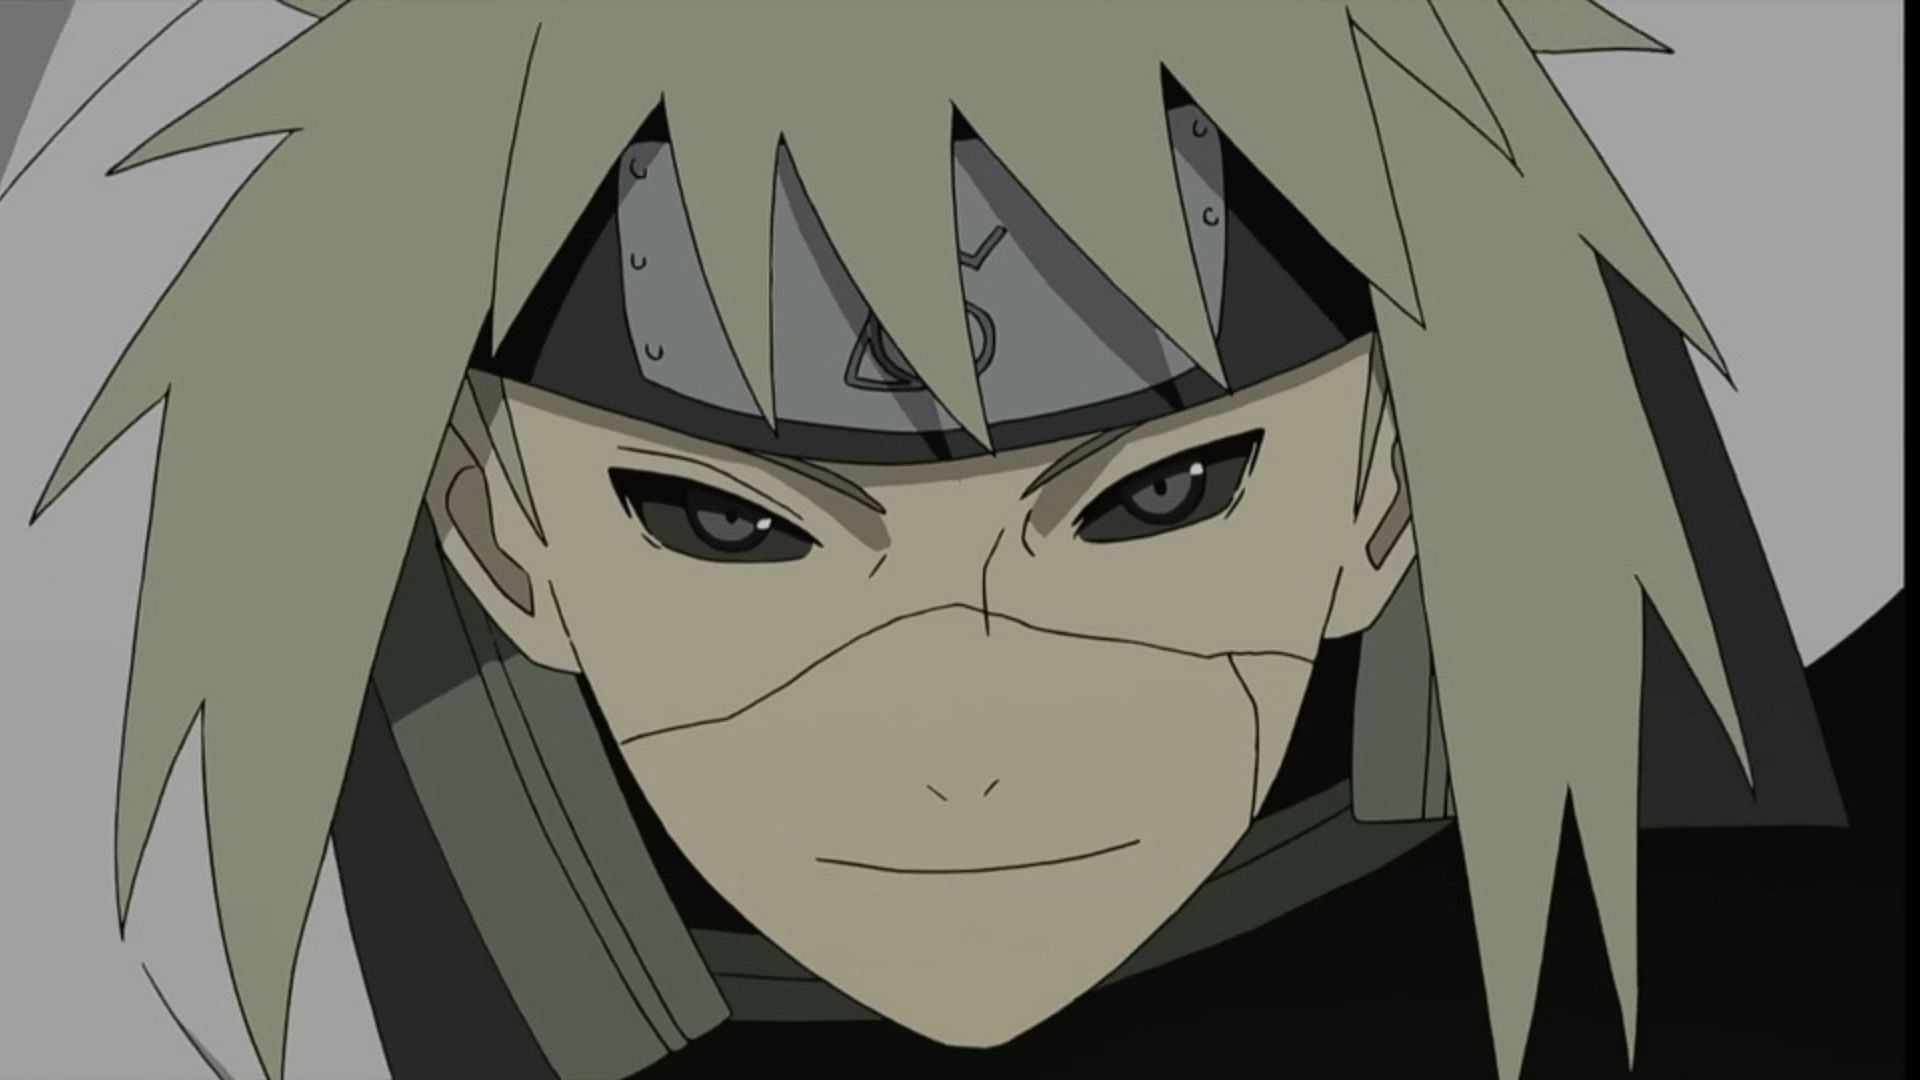 Minato, as seen in the anime Naruto (Image via Studio Pierrot)